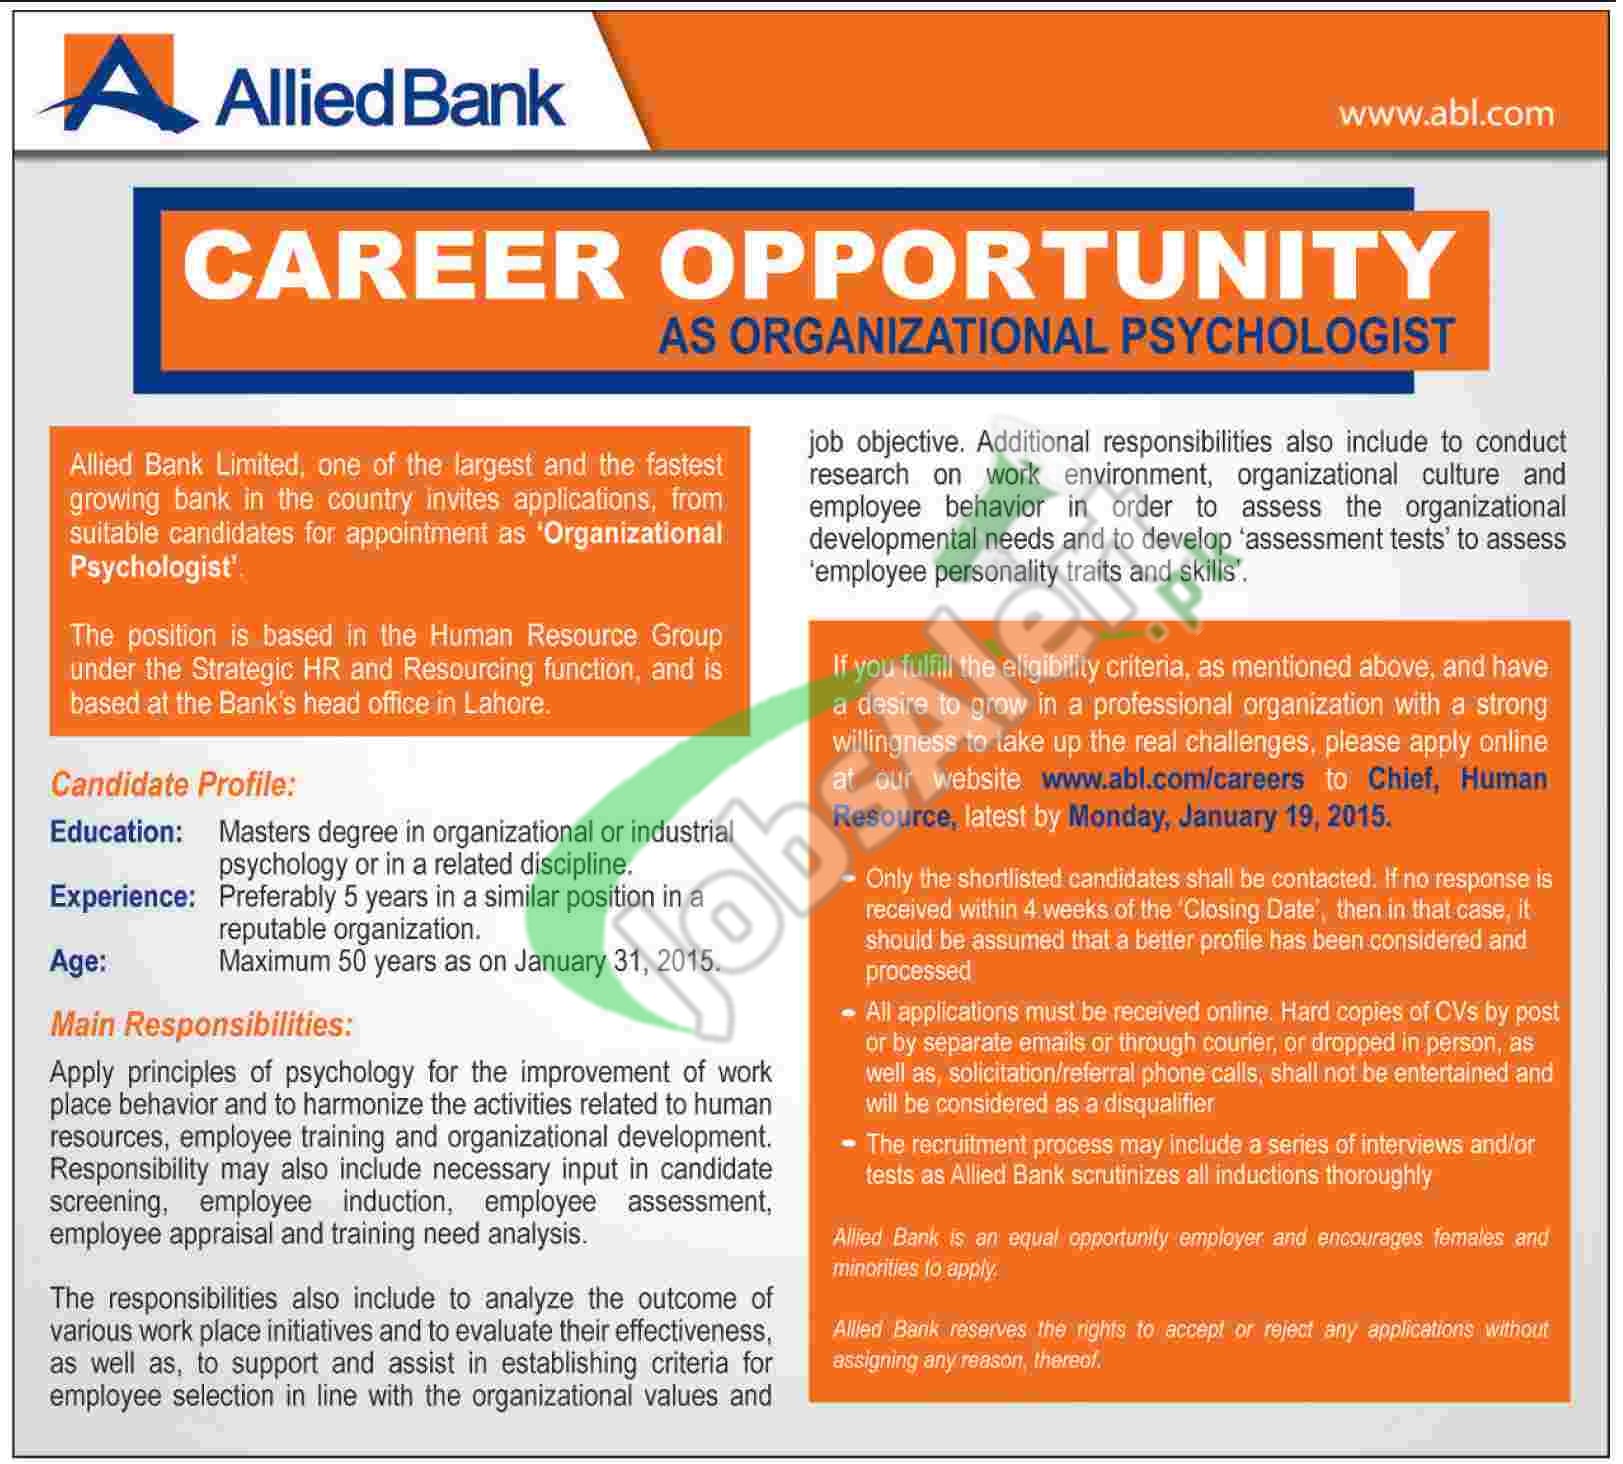 Allied Bank Ltd